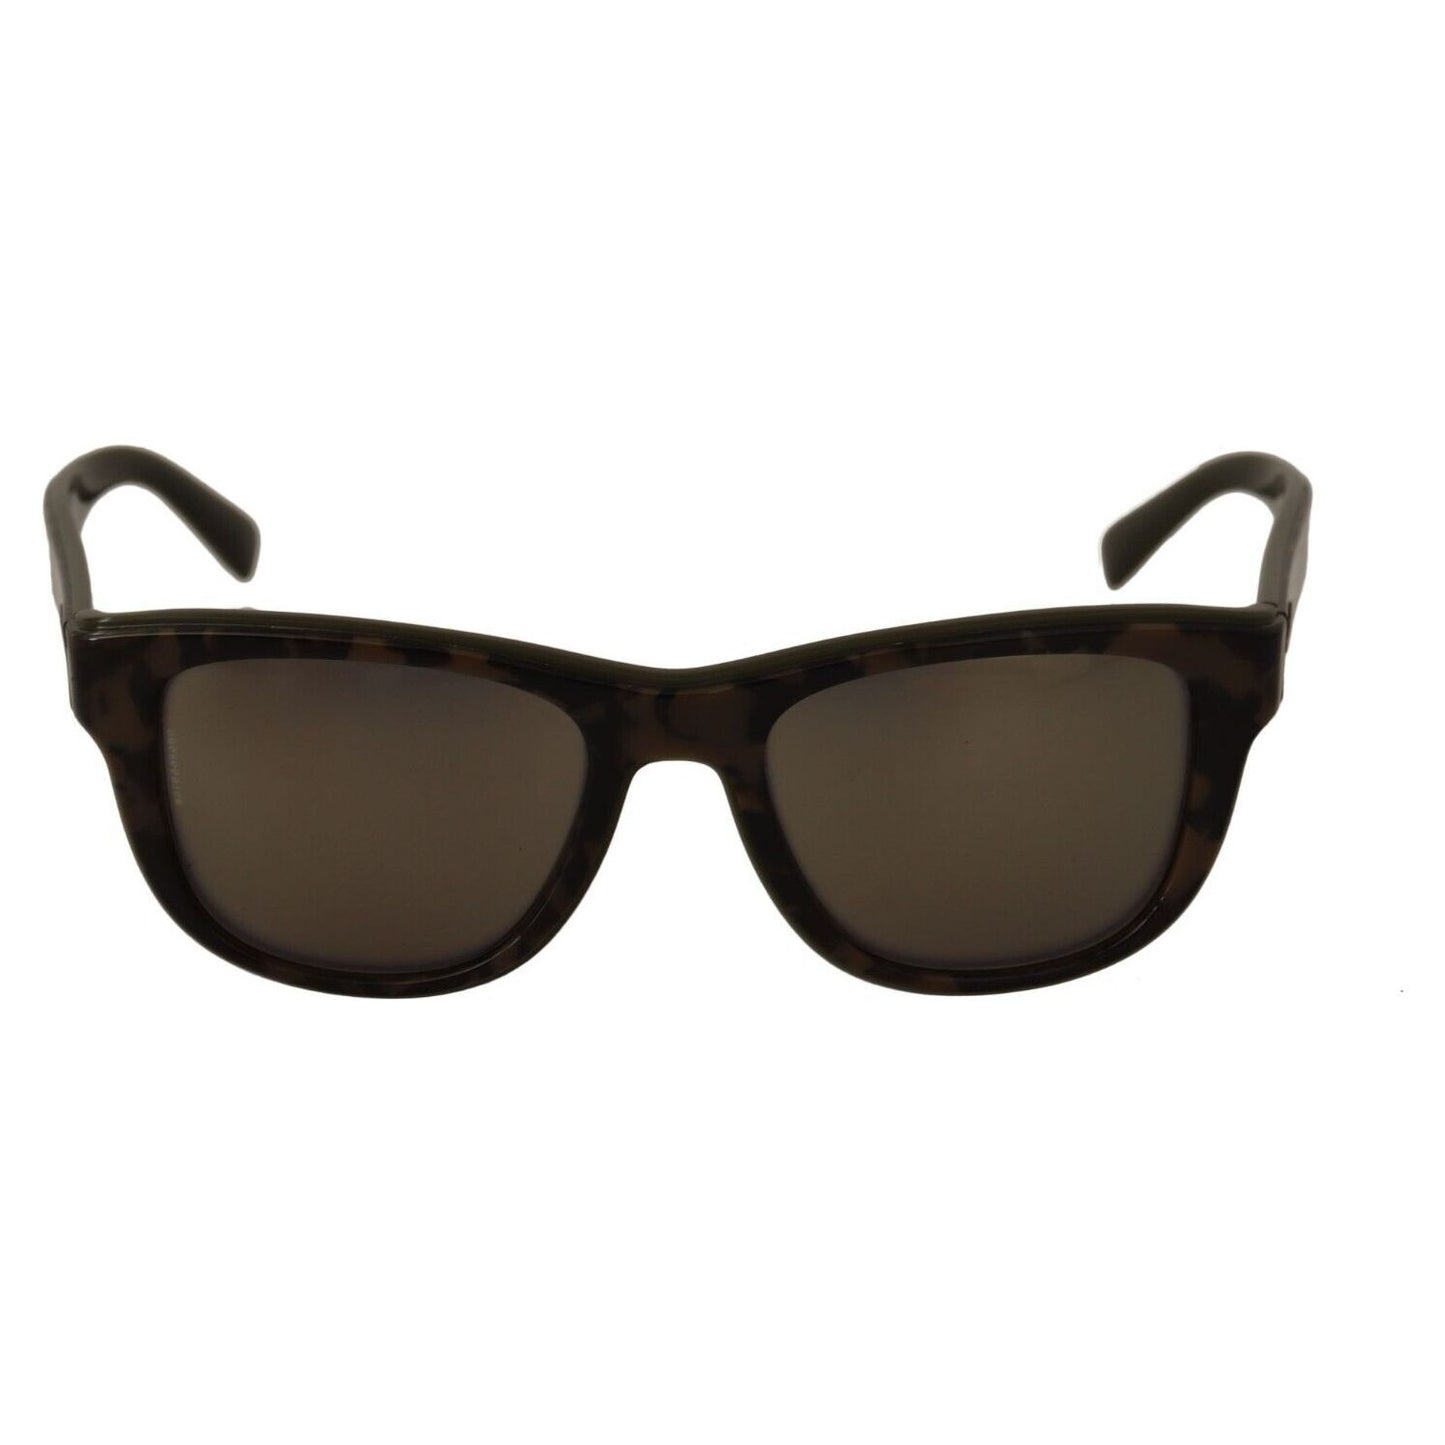 Dolce & Gabbana Chic Black Acetate Designer Sunglasses MAN SUNGLASSES brown-mirror-lens-plastic-full-rim-sunglasses